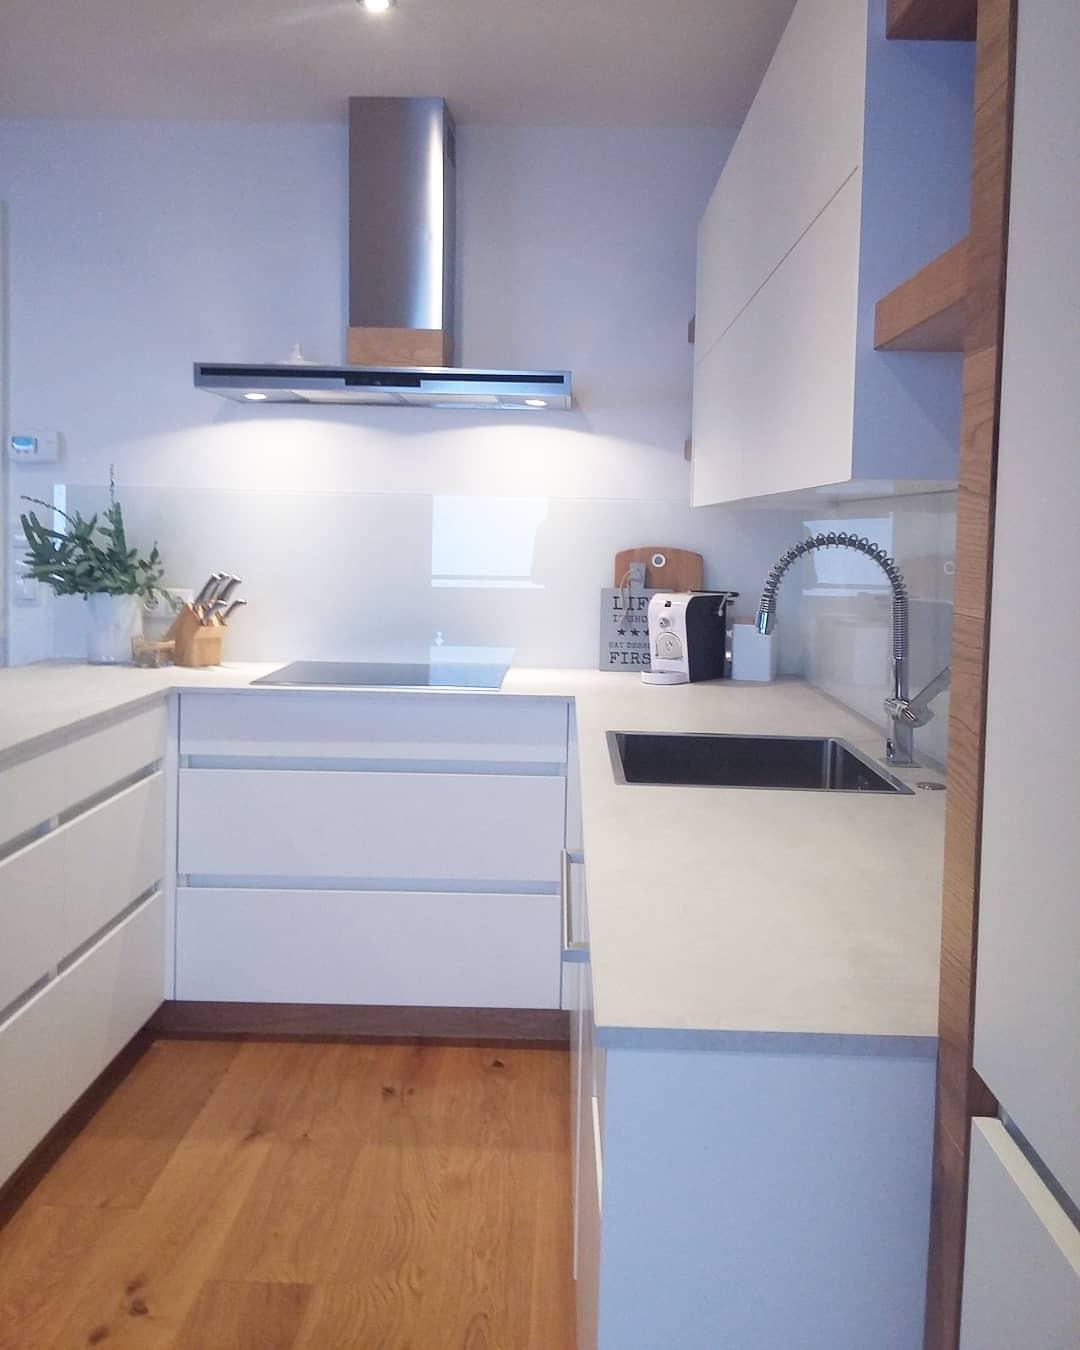 #nordic #whiteandwood #whitekitchen #küche #grifflos #matt #kitchen #kitchendecor #home #clean #küchenliebe #deco